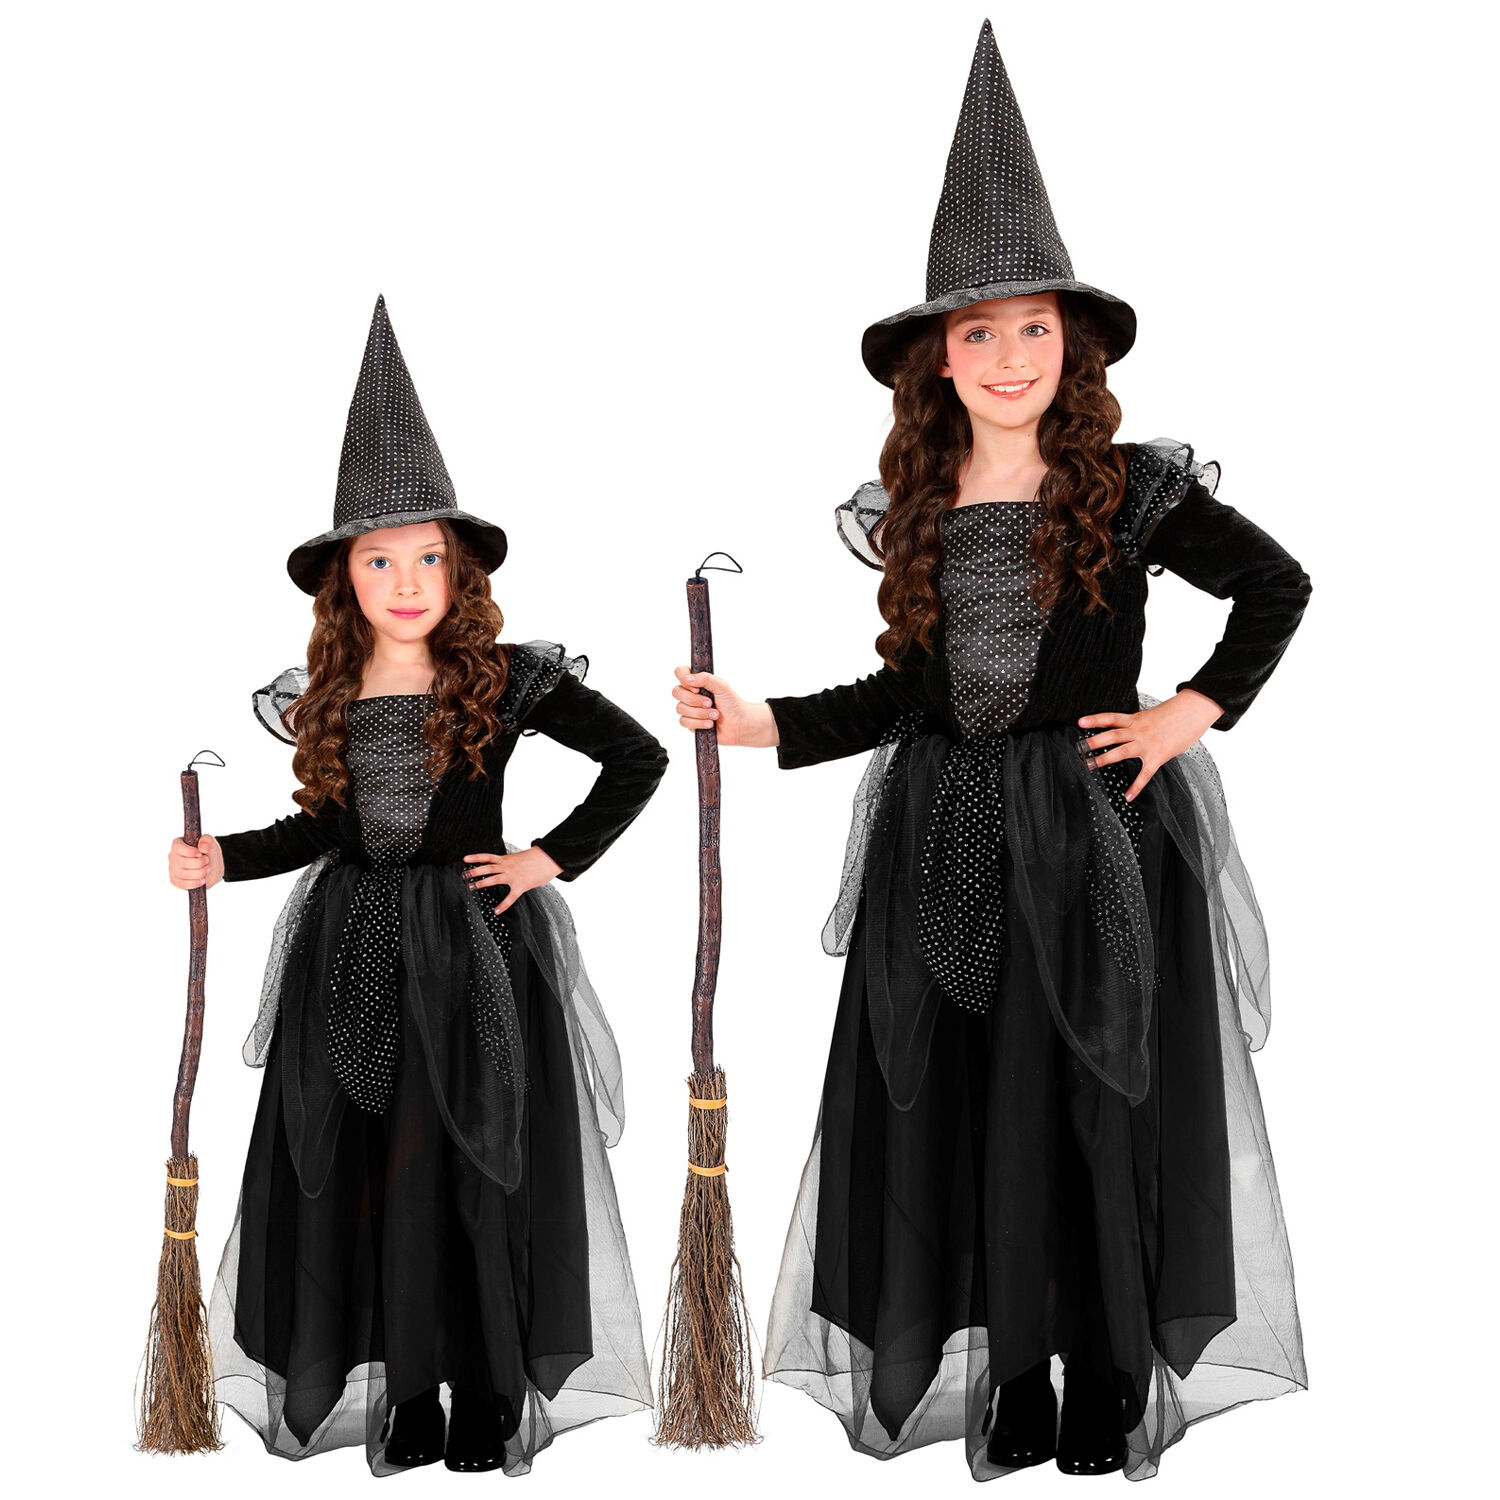 NEU Kinder-Kostüm Hexe, Kleid - verschiedene Produkte Kinder mit (98-140) Zubehör schwarz - & Hexenhut, Halloween Halloween-Kostüme Größen